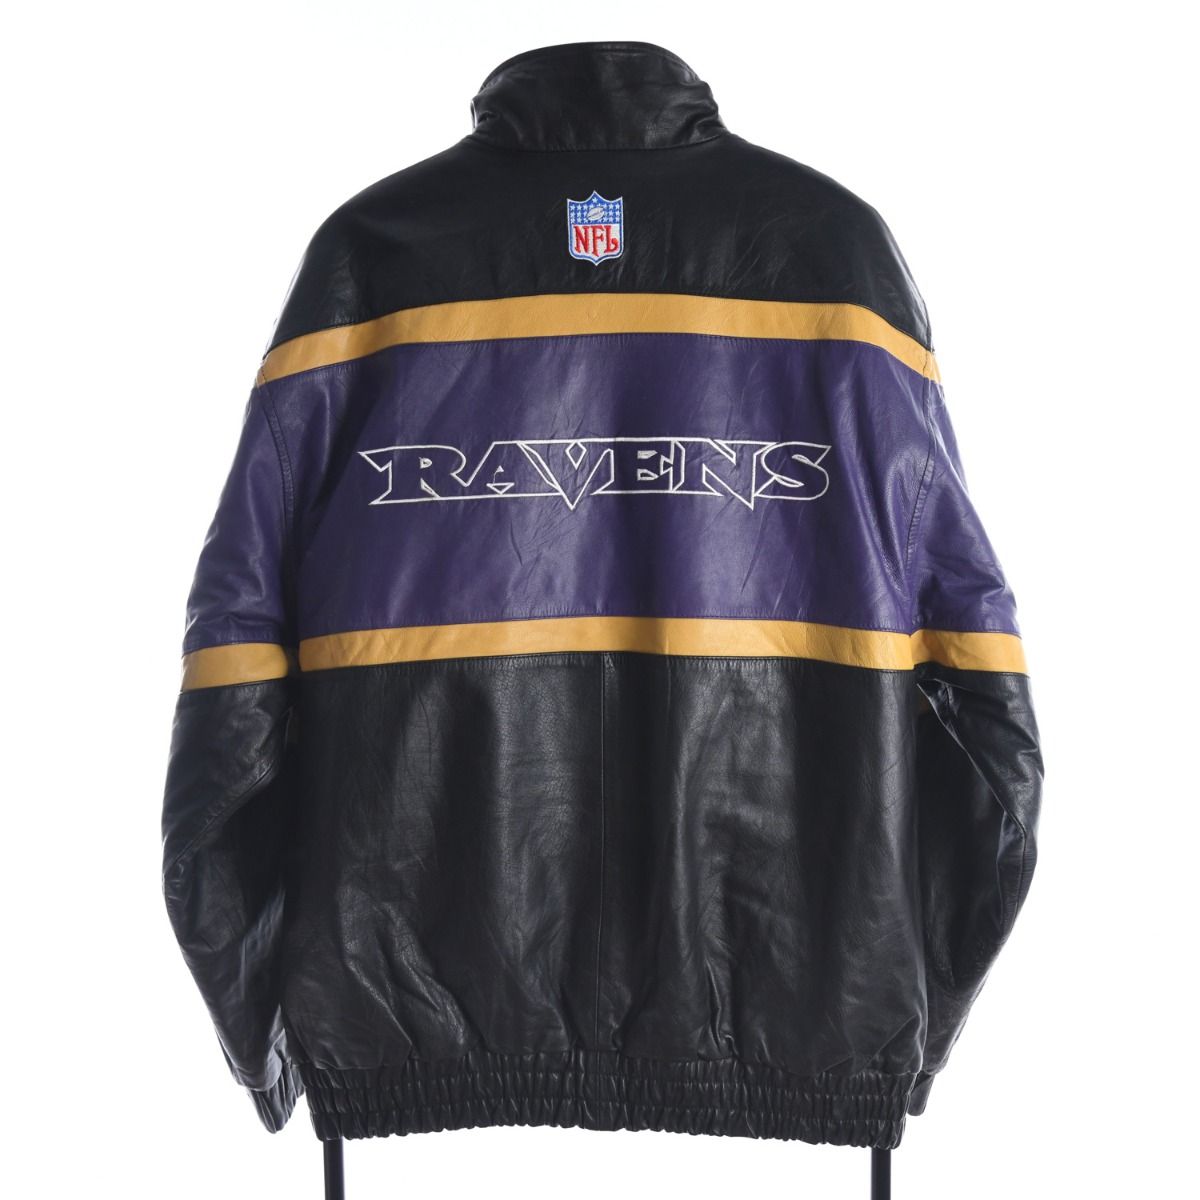 Baltimore Ravens X Starter 1990s Jacket 